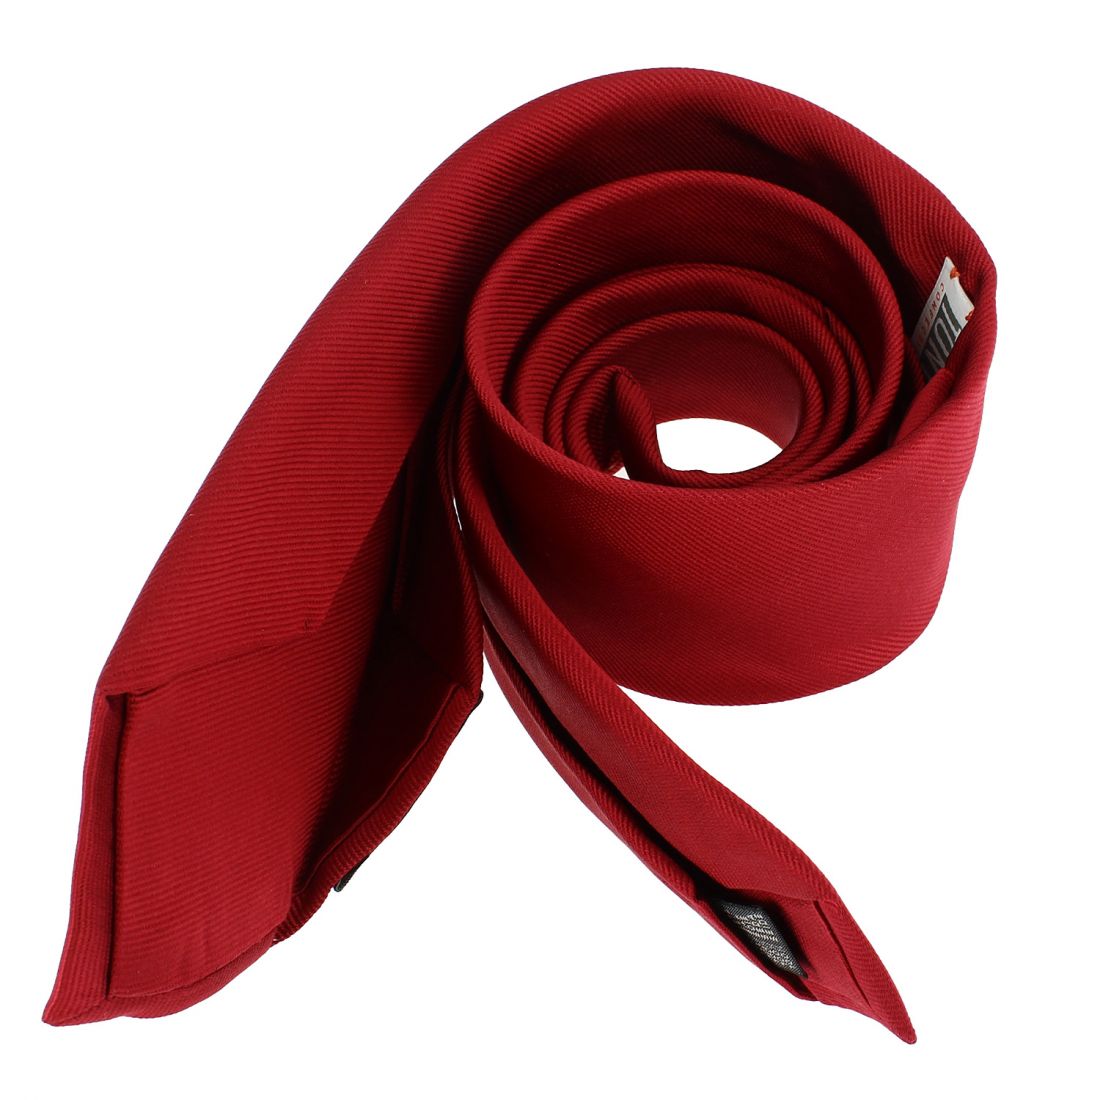 Cravate 6 plis Tony & Paul confection main Rouge sang Soie Uni Homme